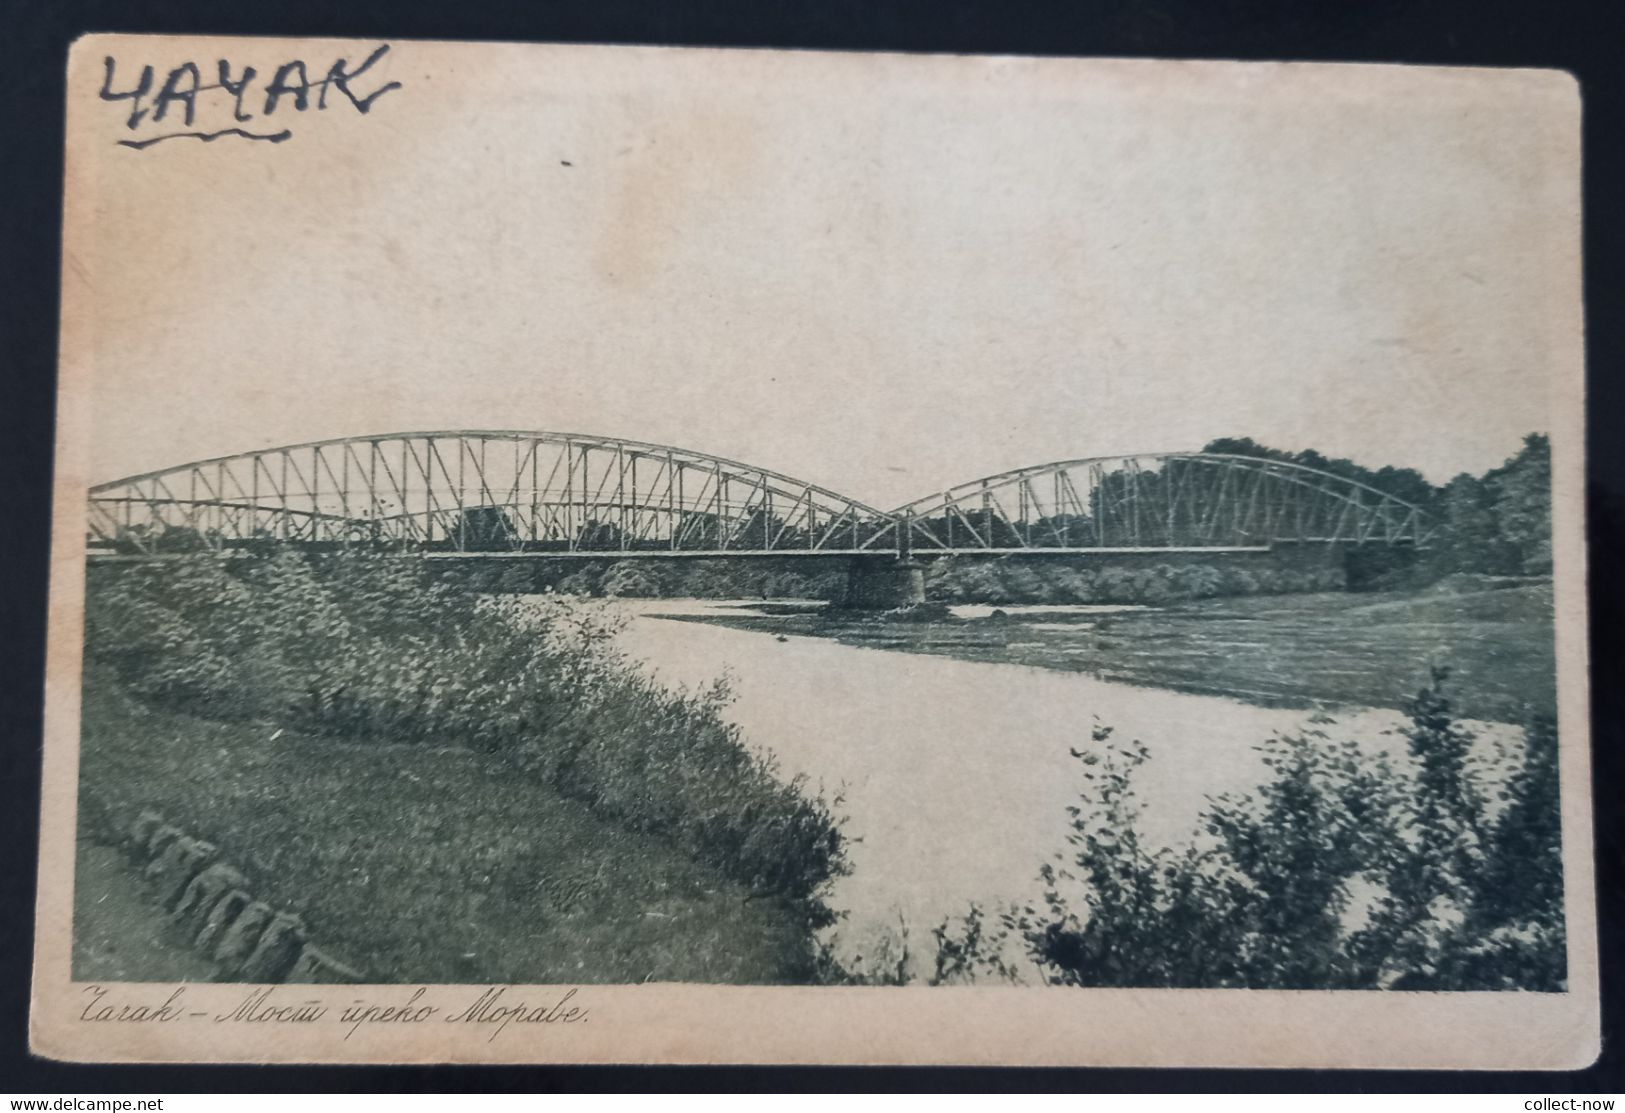 308_001 CACAK - Zeleznicki most - railway bridge. Srbija Serbia 1924.jpg